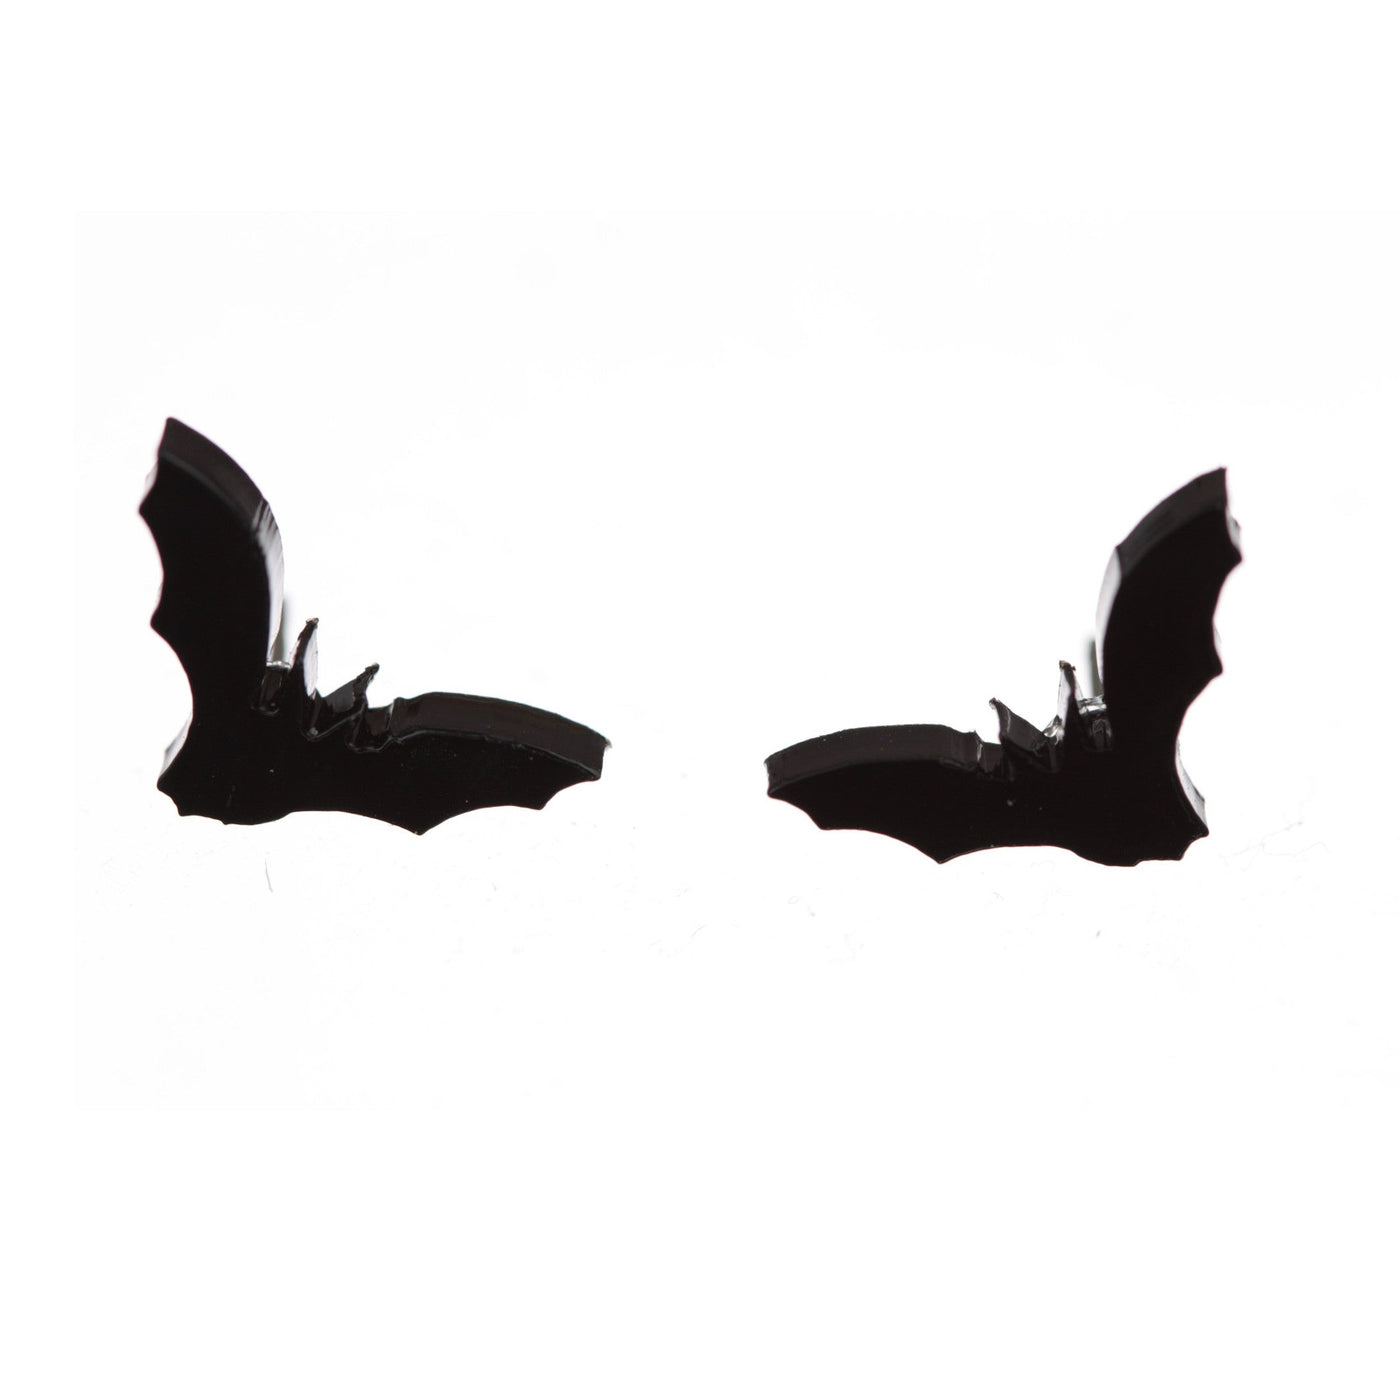 Shiny black vampire bat earrings on a white background.